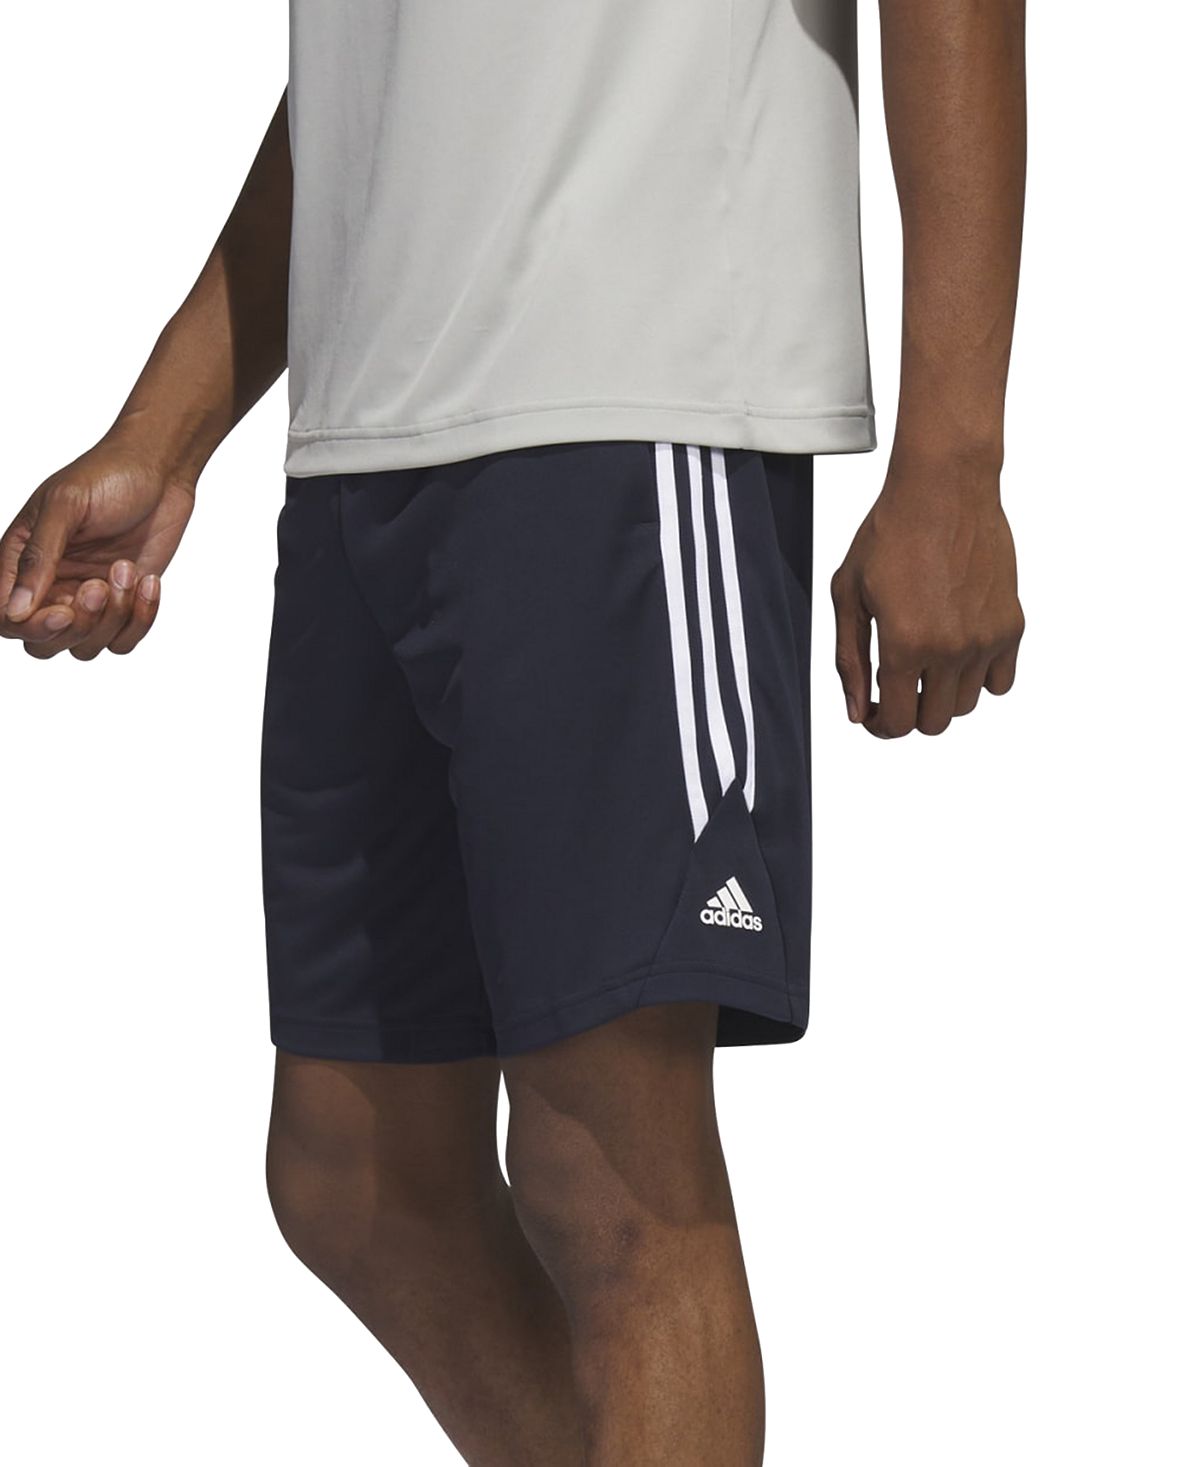 Мужские баскетбольные шорты Legends с 3 полосками 11 дюймов adidas